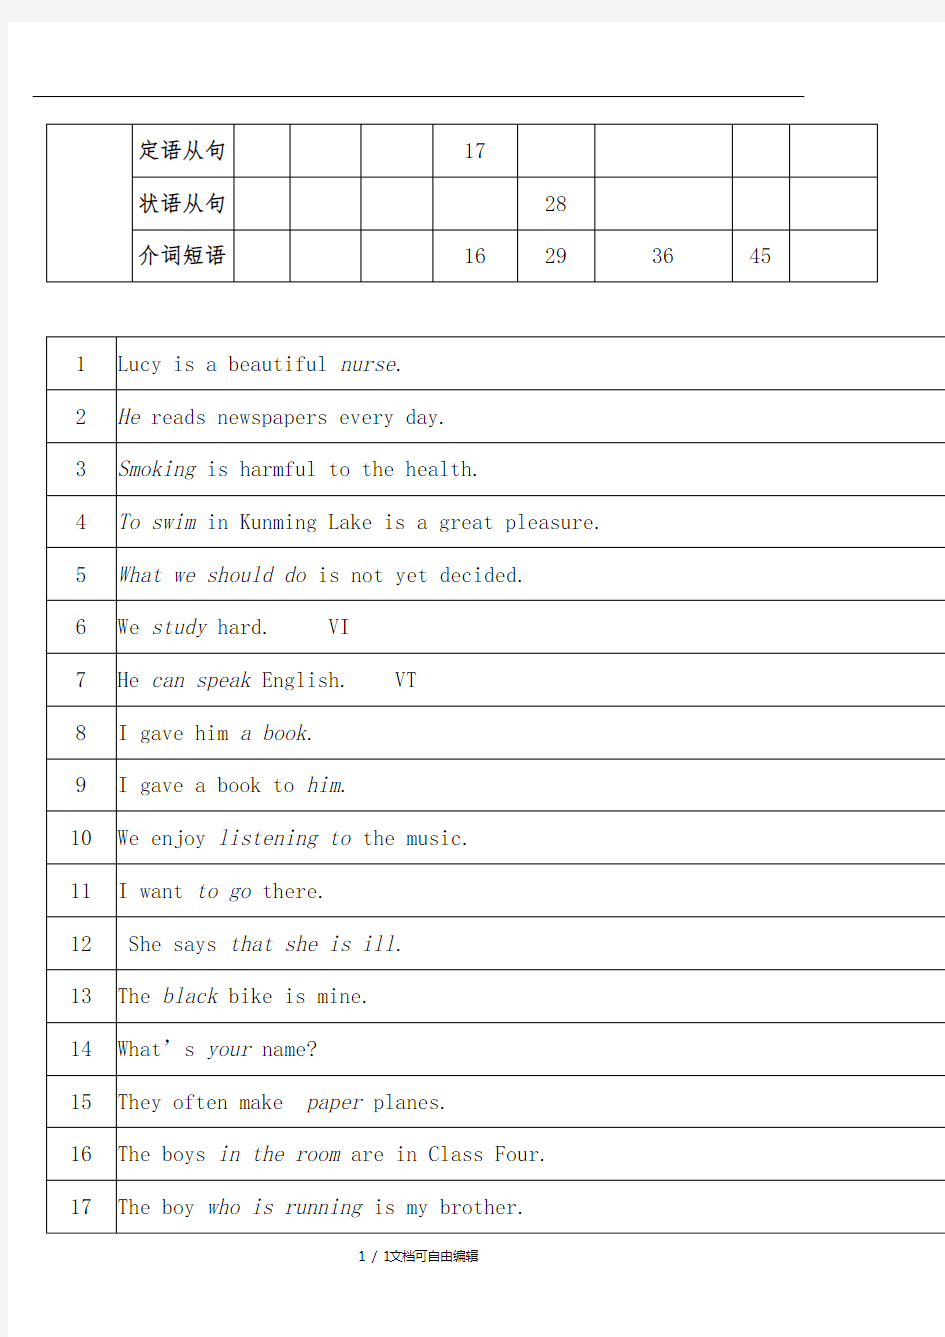 英语八大句子成分及构成要素汇总表